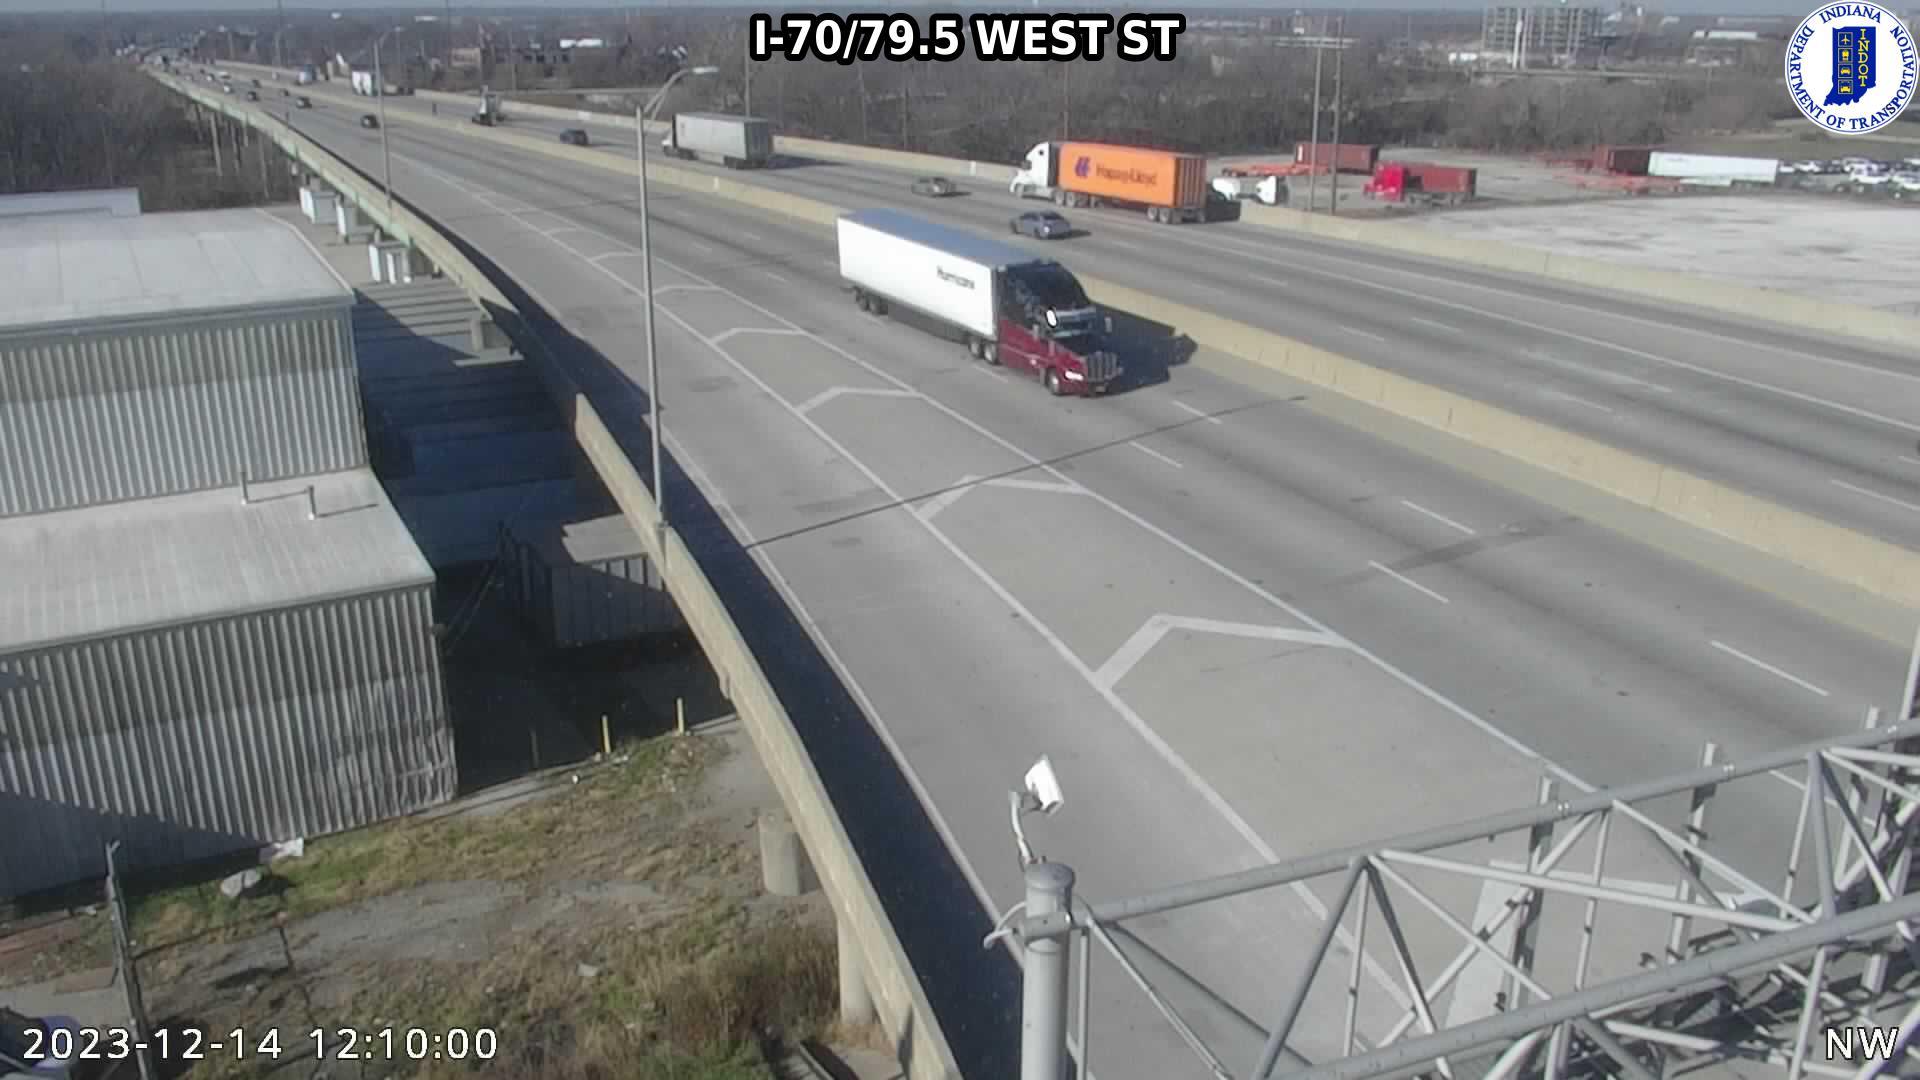 Old Southside: I-70: I-70/79.5 WEST ST Traffic Camera